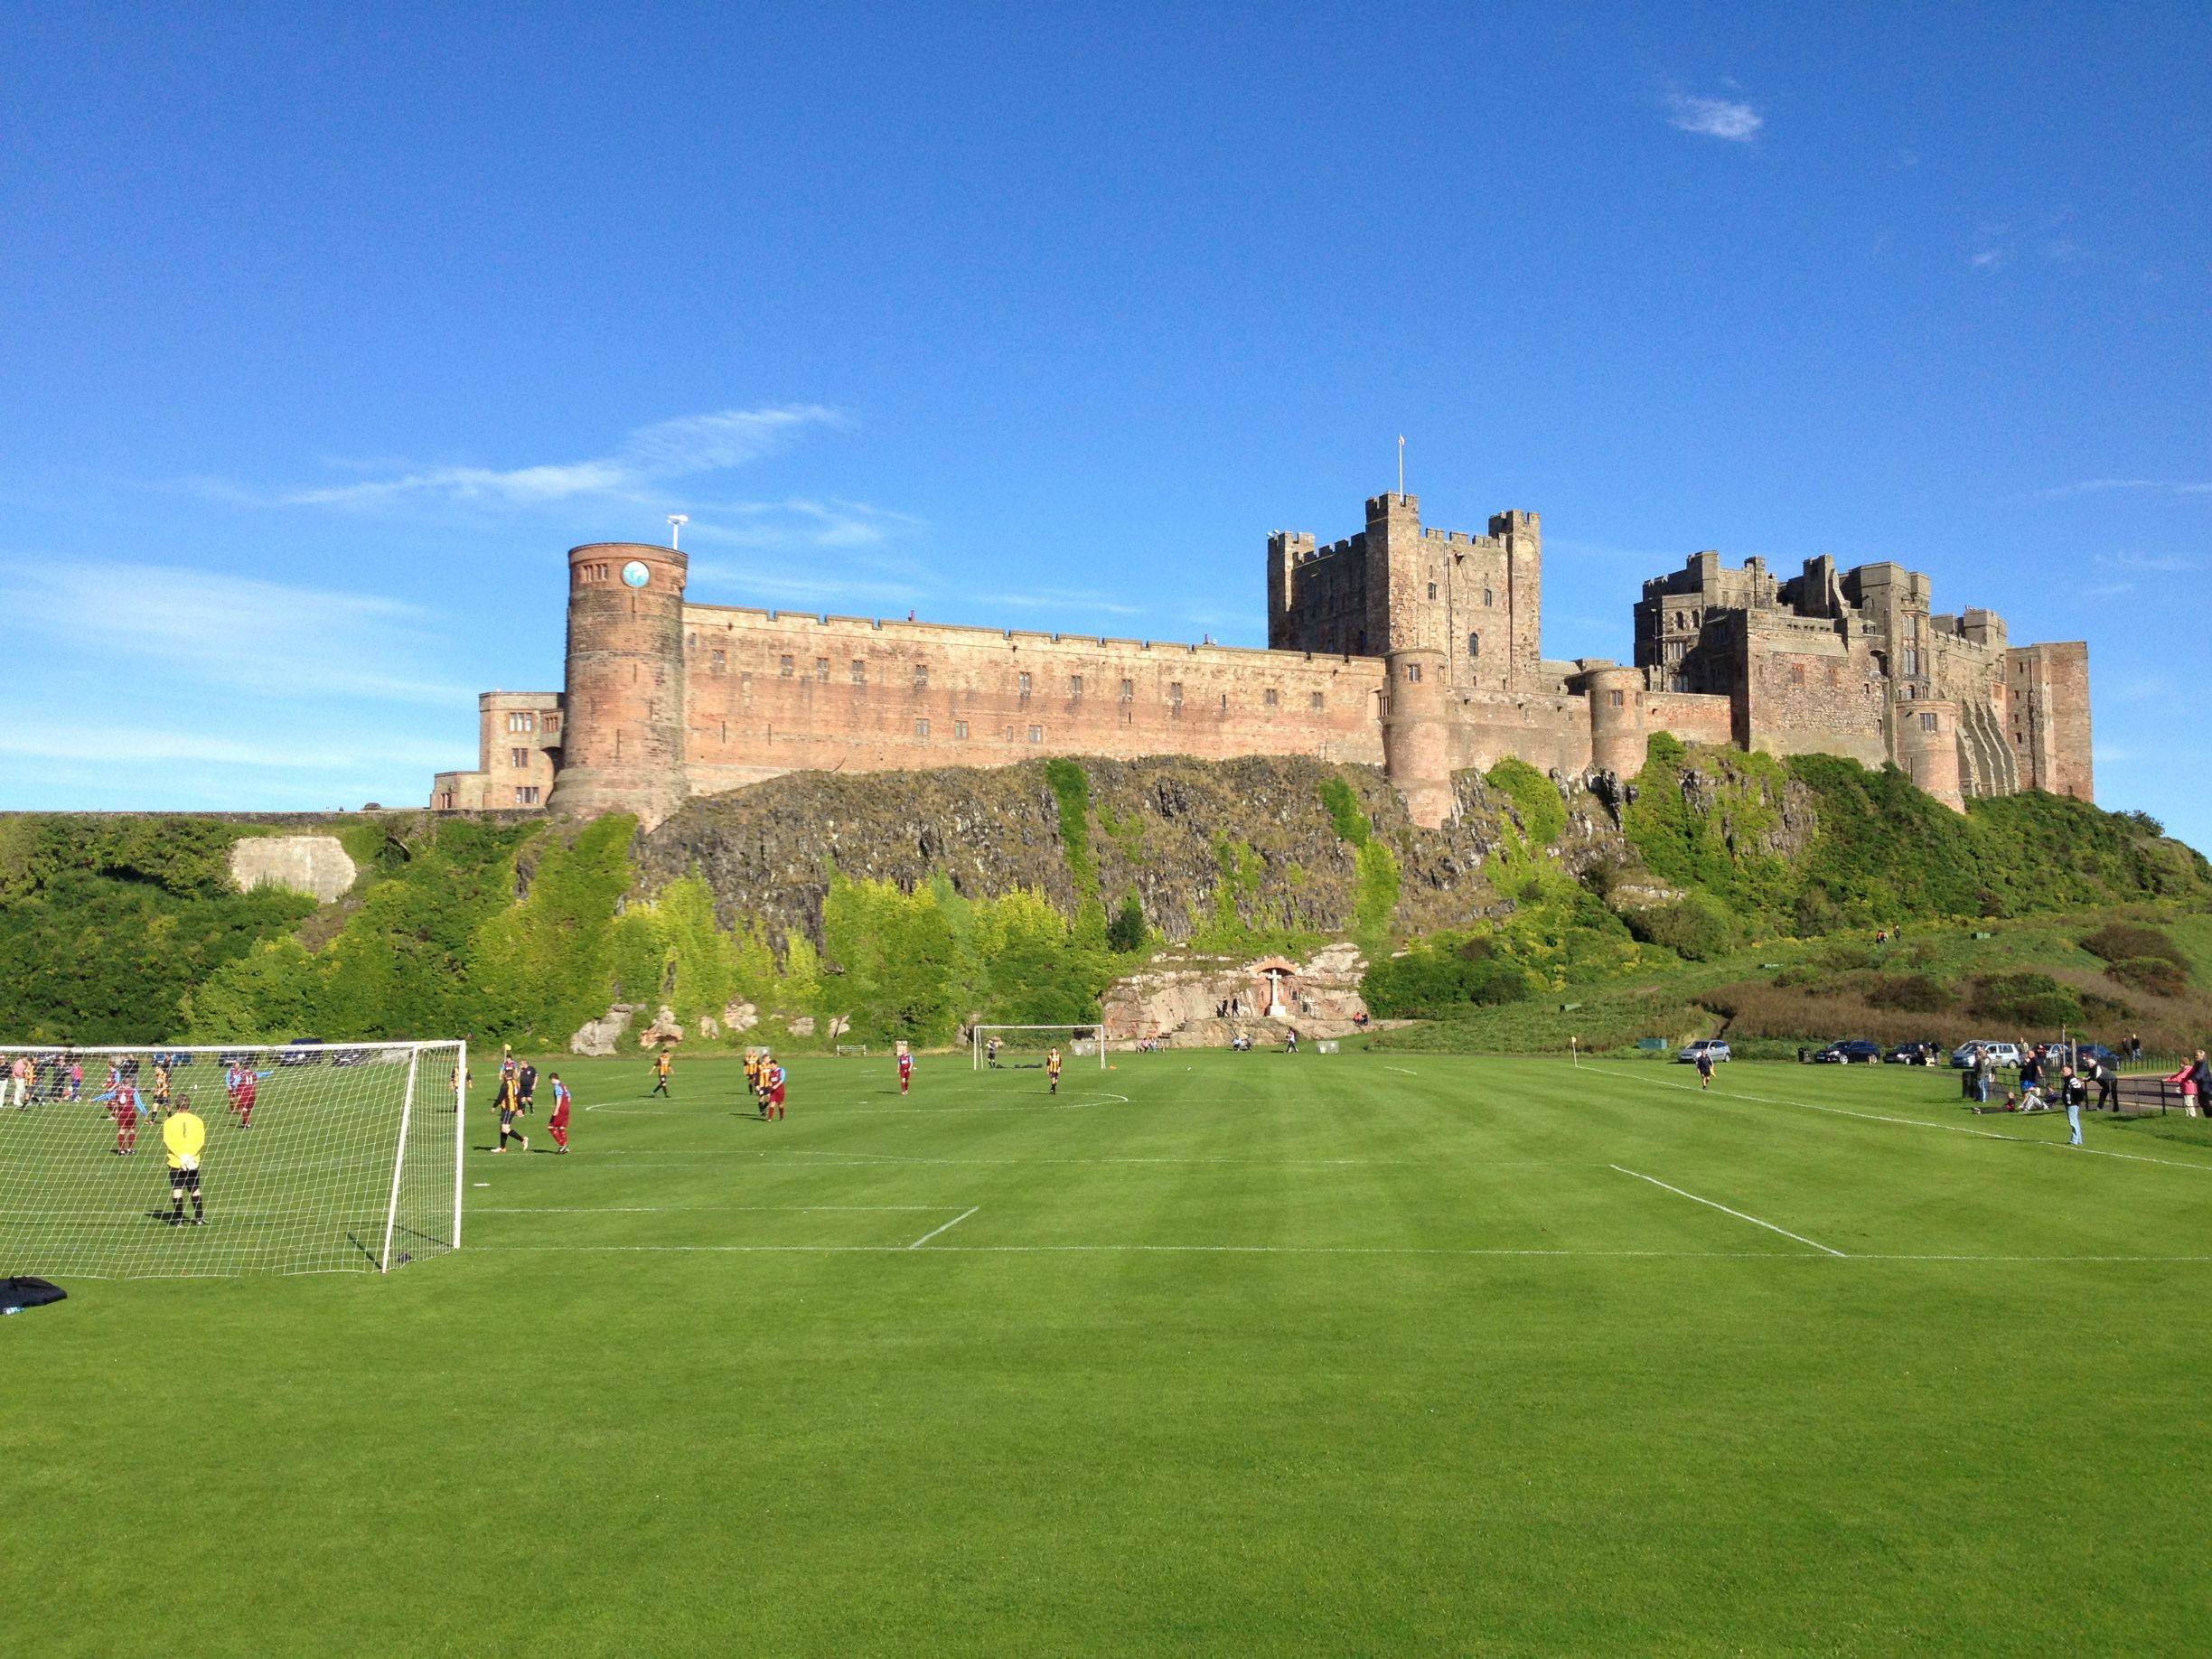 bamburgh_castle_soccer_field.jpg